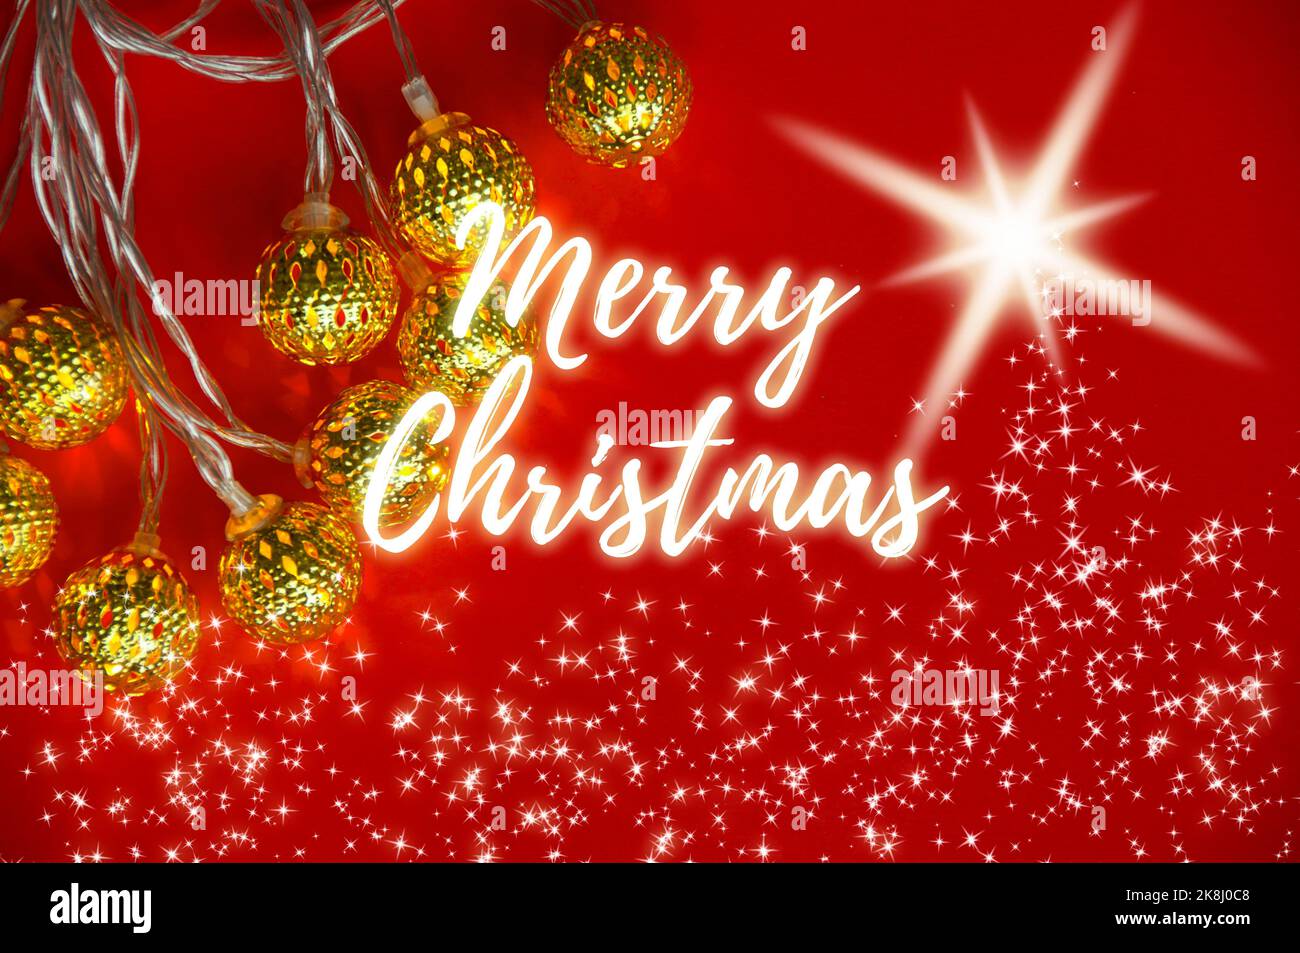 Frohe Weihnachten wünscht Text mit Weihnachtsdekoration und leuchtenden Sternen und goldenen Kugeln auf rotem Hintergrund. Weihnachtsfeier Konzept. Stockfoto